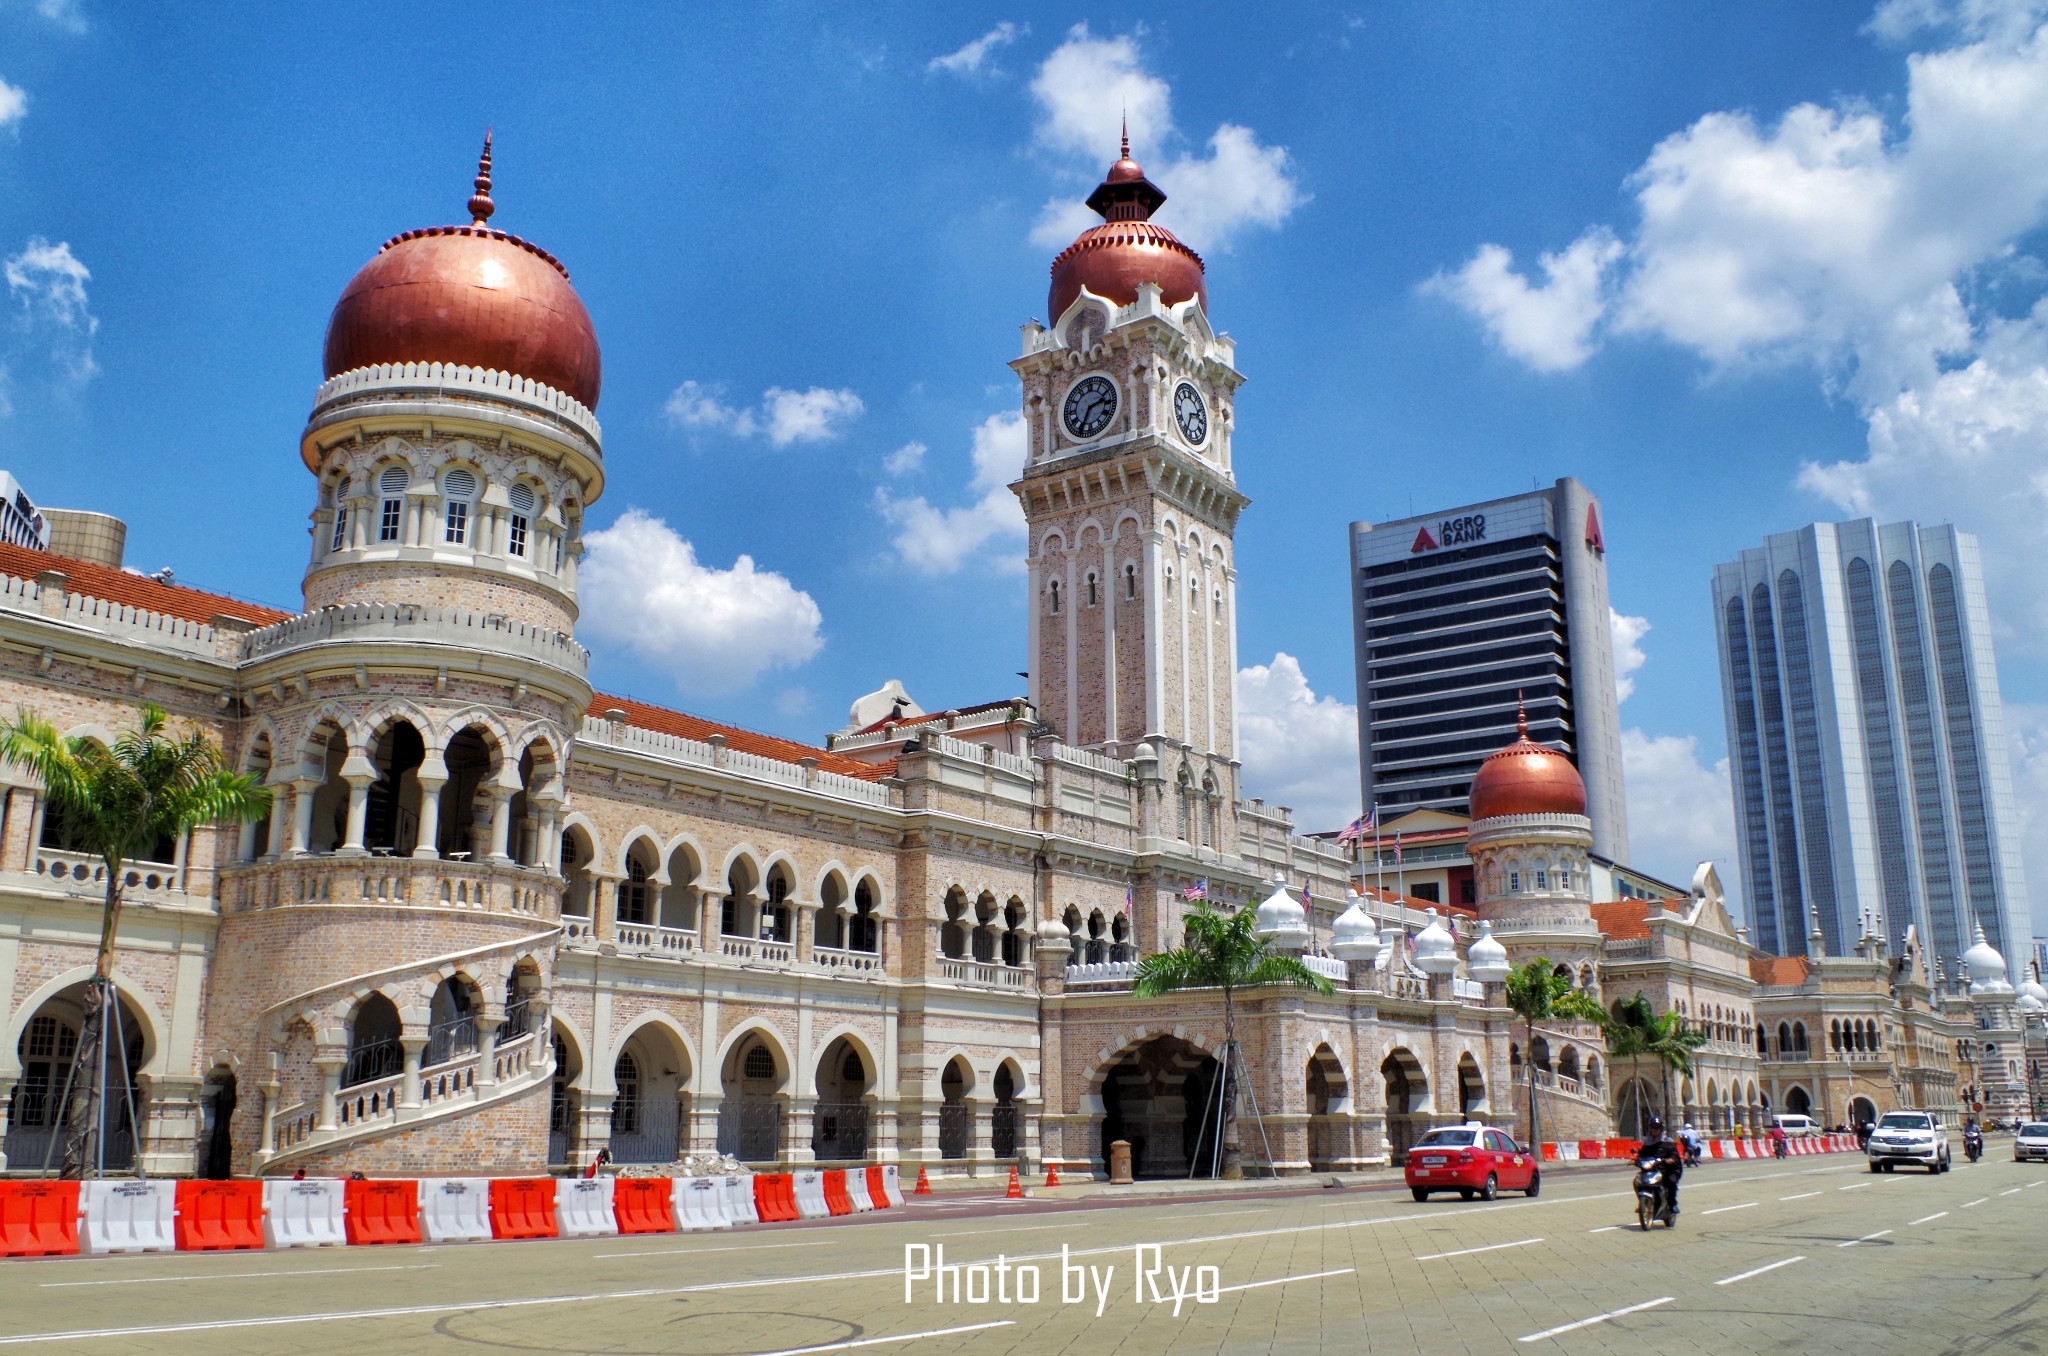 马来西亚独立的历史时刻,广场周边还有一处都铎王朝样式结构的建筑物